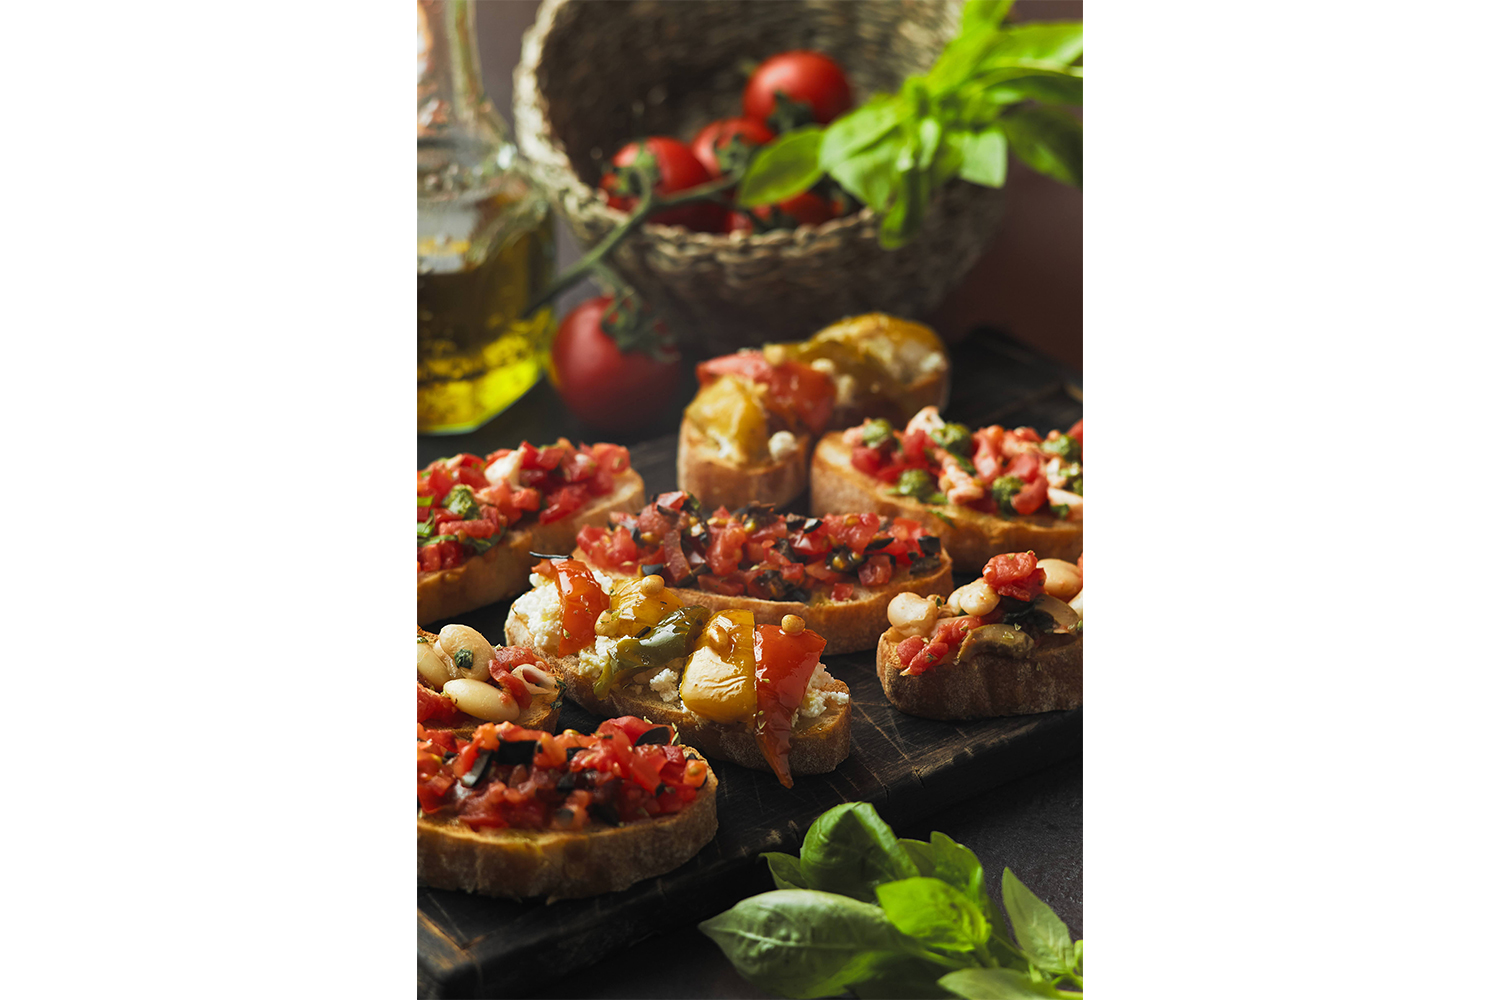 Pomodoro. Իտալական նեղլիկ փողոցի ավանդական ուտեստները